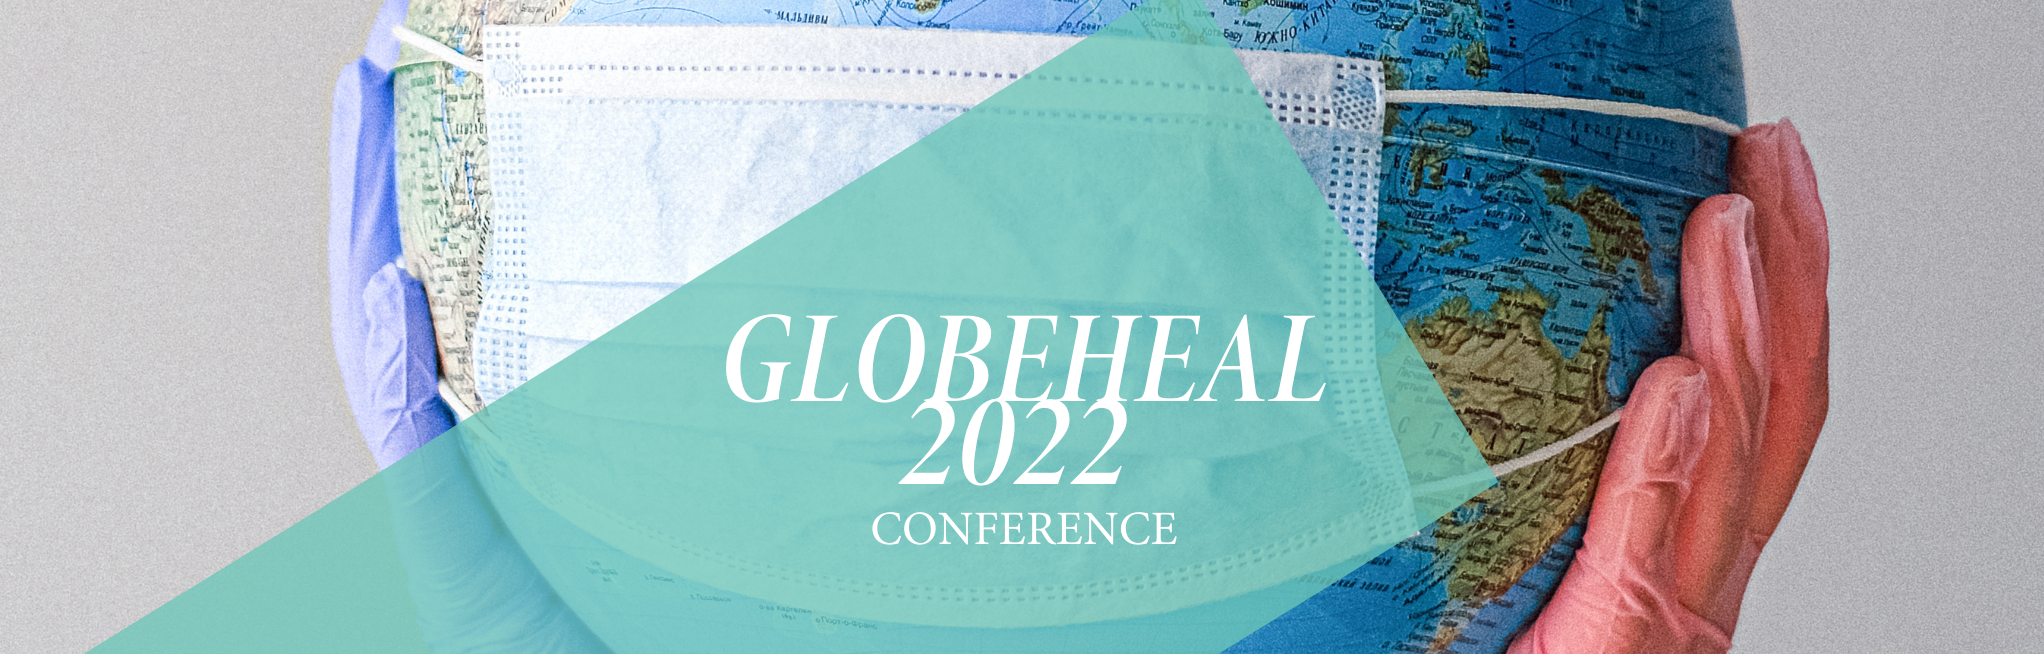  GLOBEHEAL 2022 